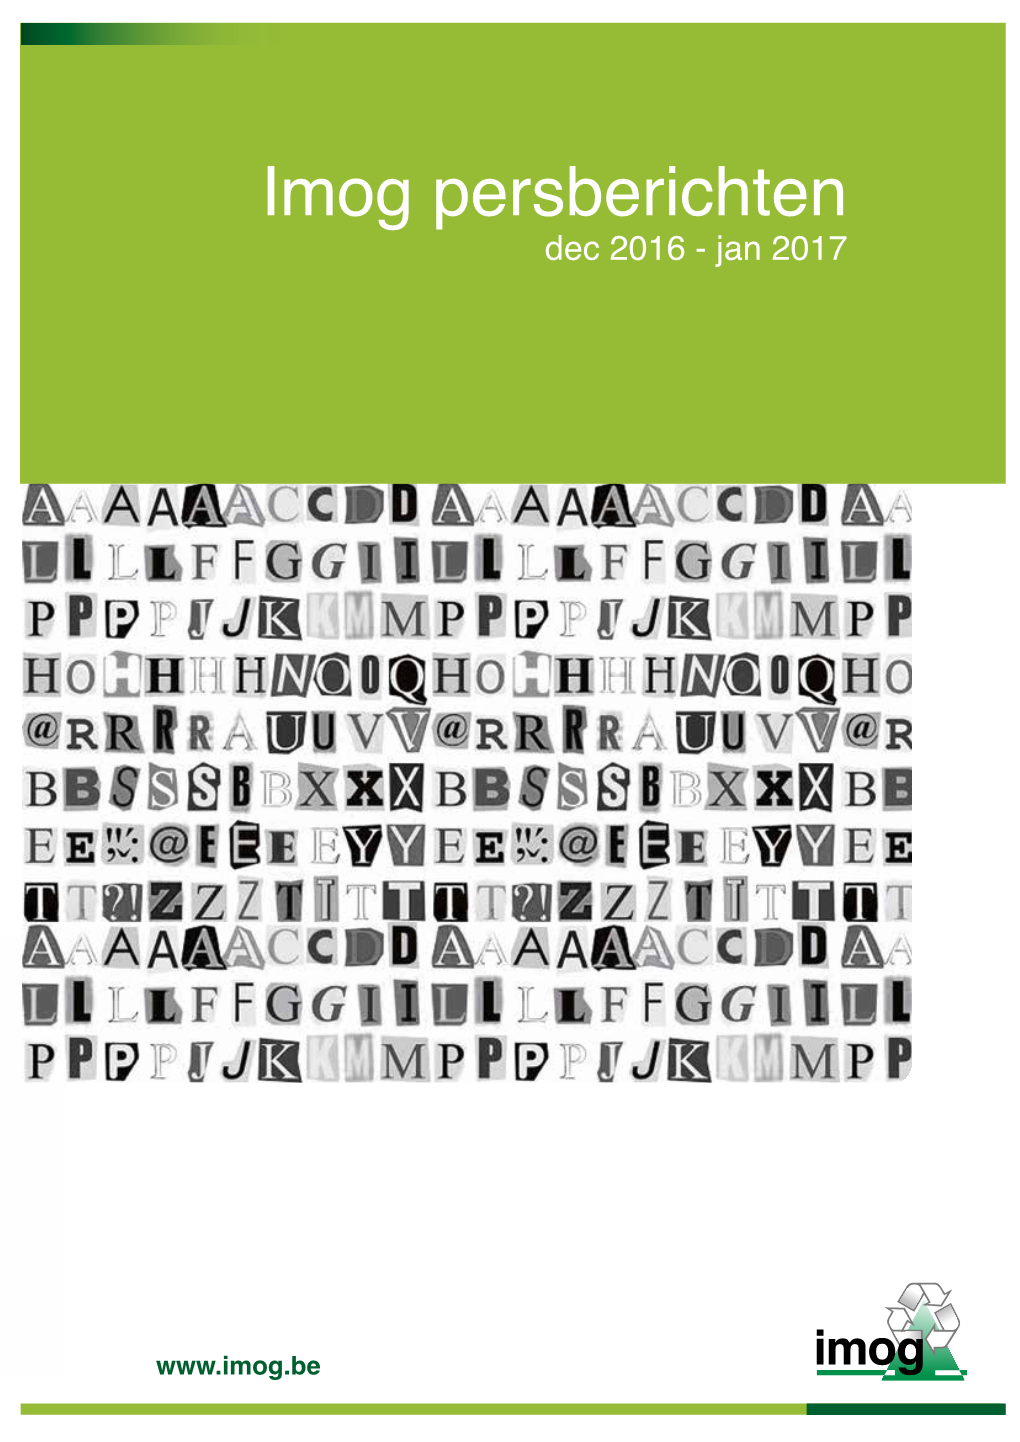 Imog Persberichten Dec 2016 - Jan 2017